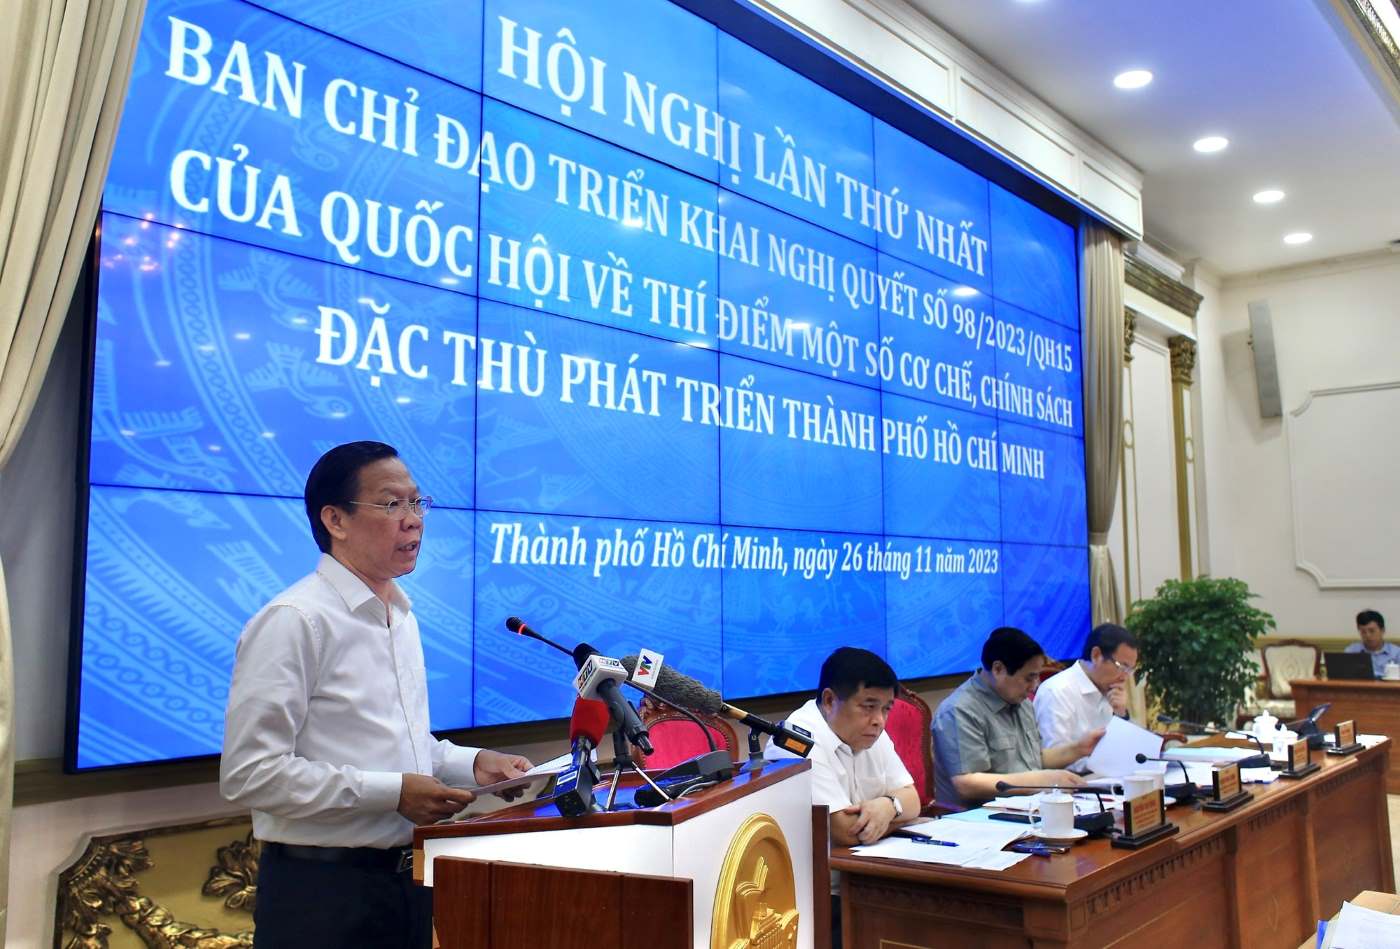  Chủ tịch UBND TPHCM Phan Văn Mãi báo cáo tại hội nghị.  Ảnh: DŨNG PHƯƠNG